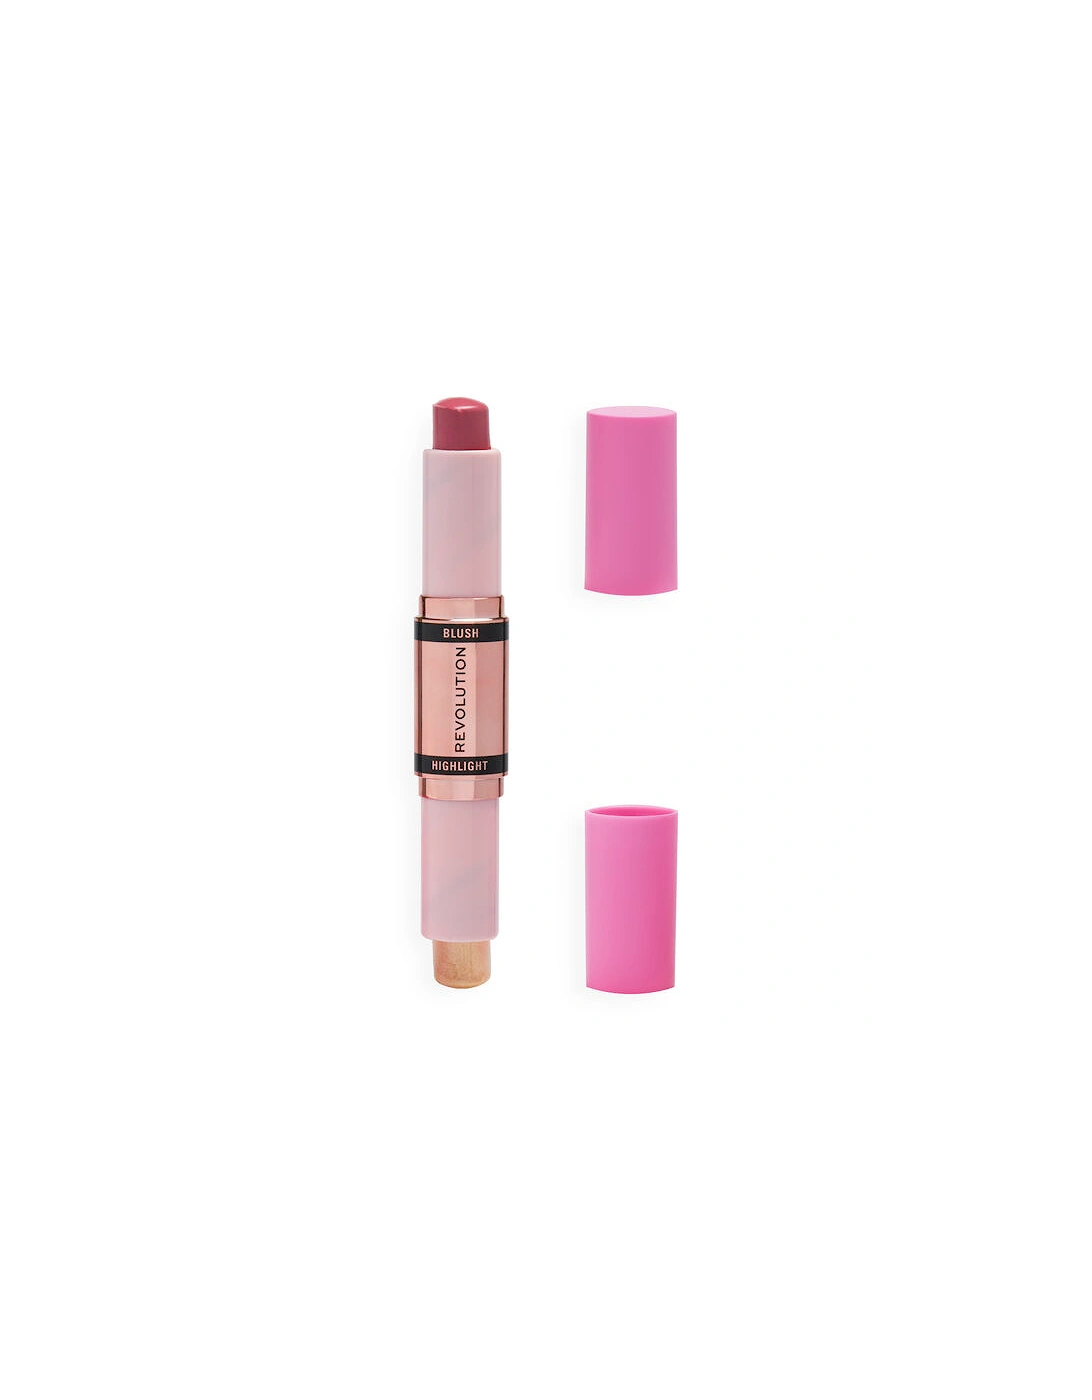 Makeup Blush & Highlight Stick Mauve Glow, 2 of 1